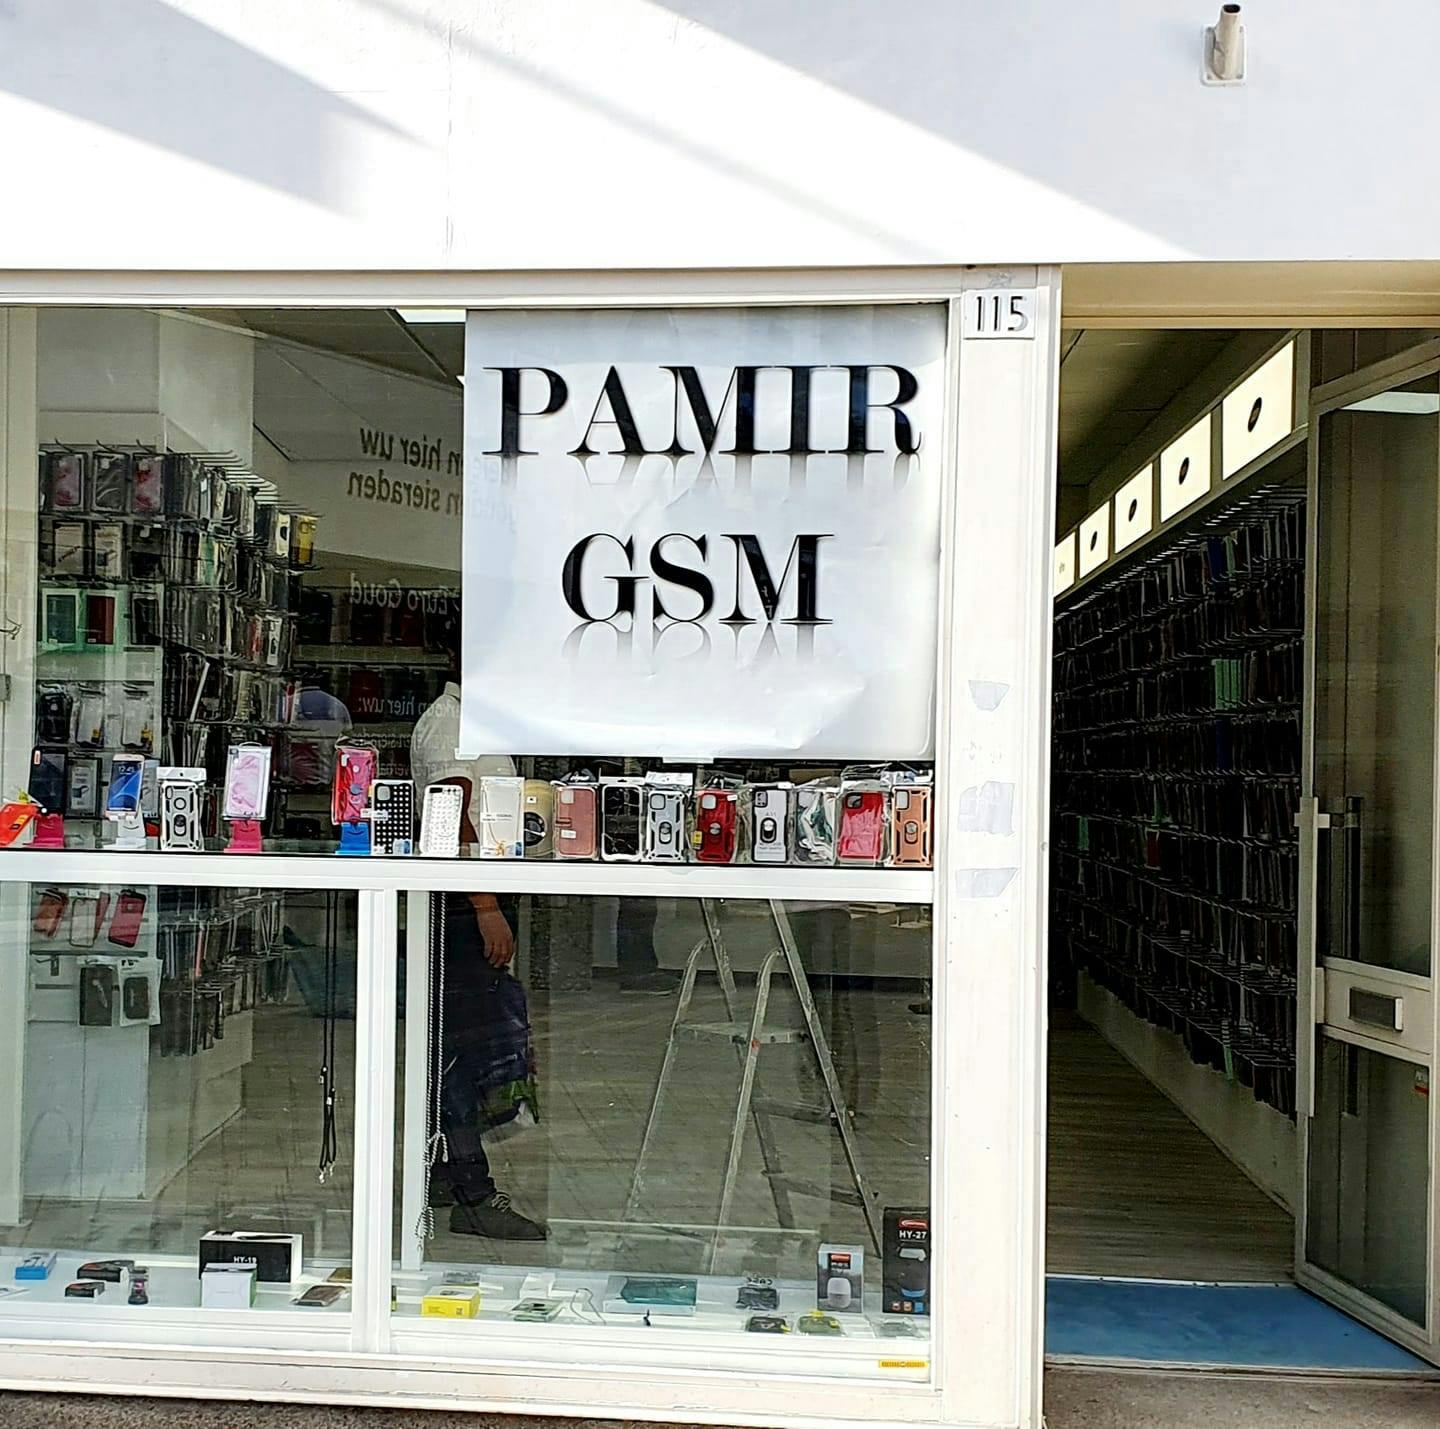 PAMIR GSM